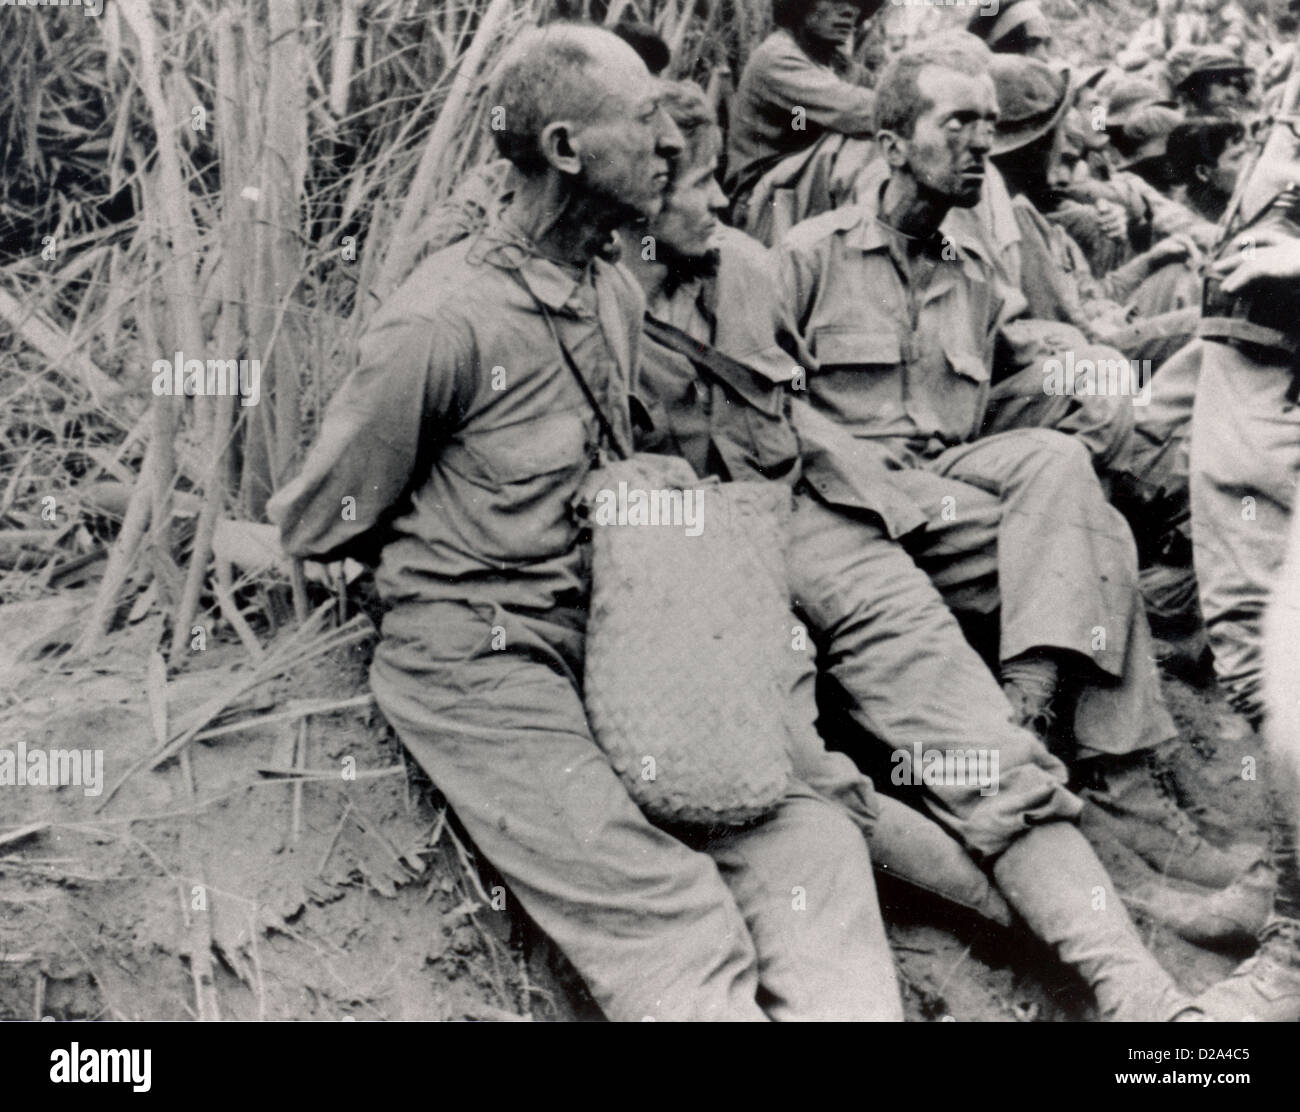 Bataan alrededor de mayo de 1942 Marzo de la Muerte de Bataán campamento penitenciario Cabanatuan a lo largo de marzo de estos prisioneros fueron fotografiados tienen su Foto de stock